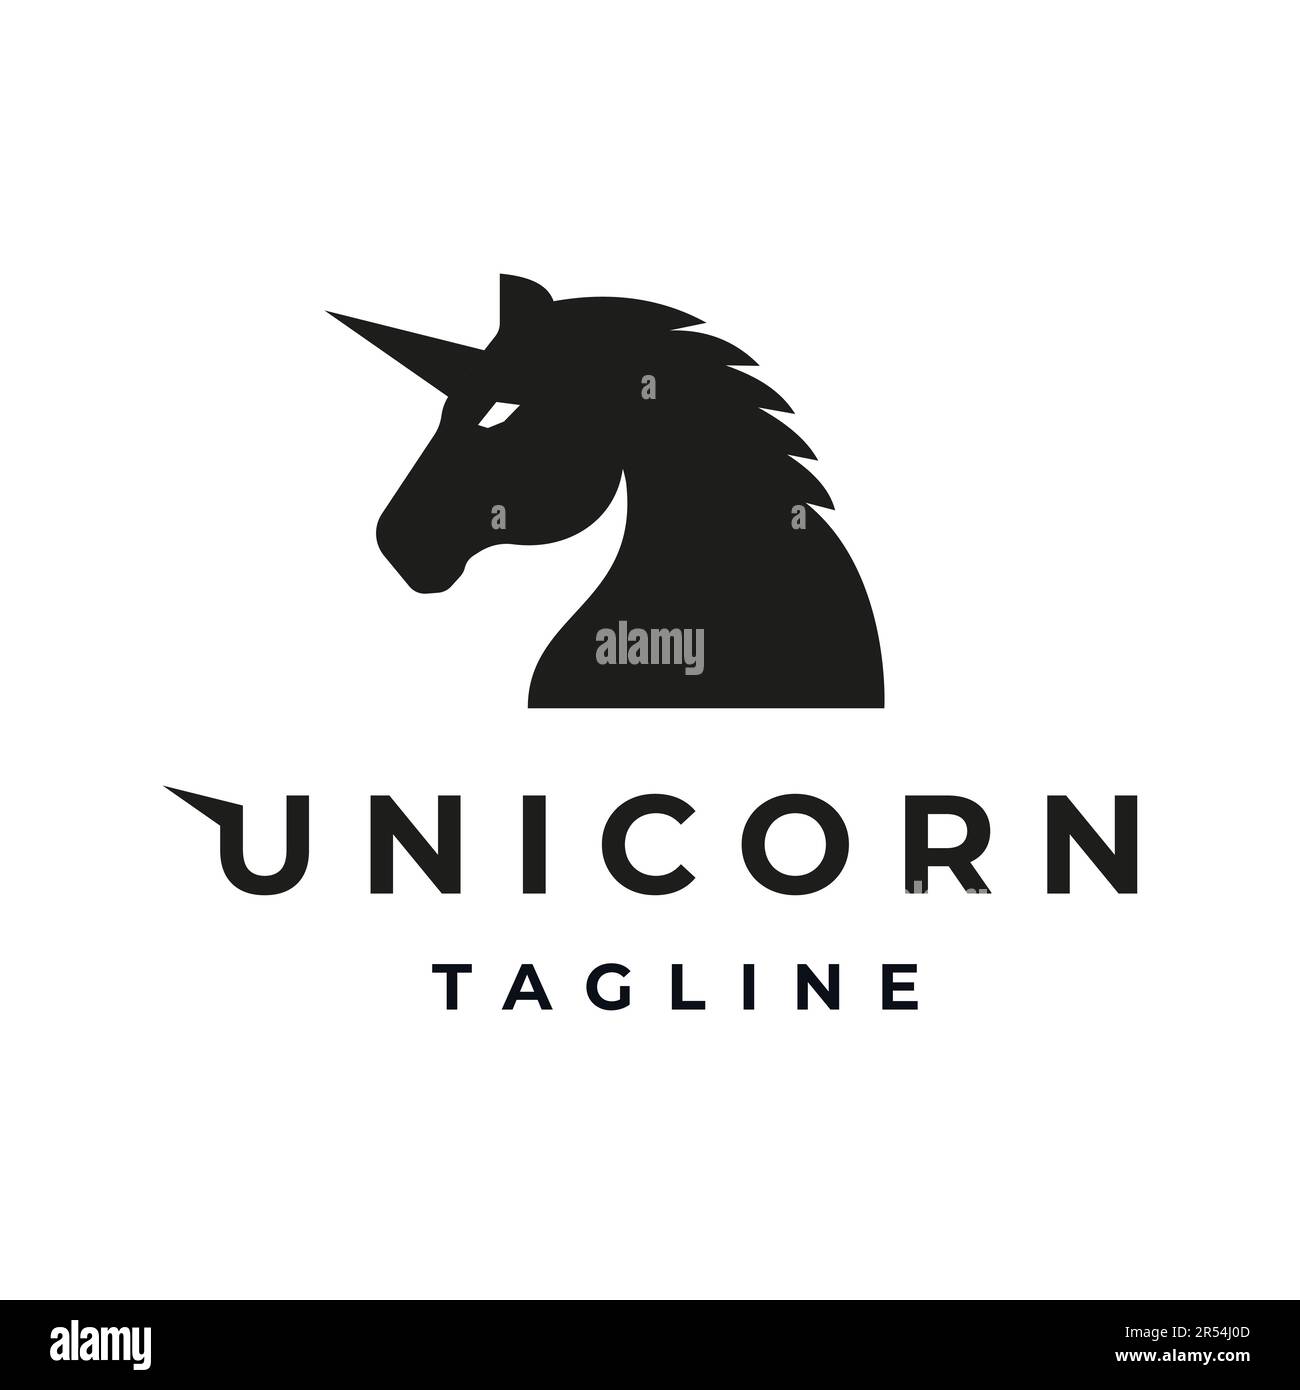 Silhouette rétro vintage de tête de cheval Unicorn avec une seule corne sur la tête, logo de cheval Unicorn, symbole, emblème, modèle de conception Illustration de Vecteur